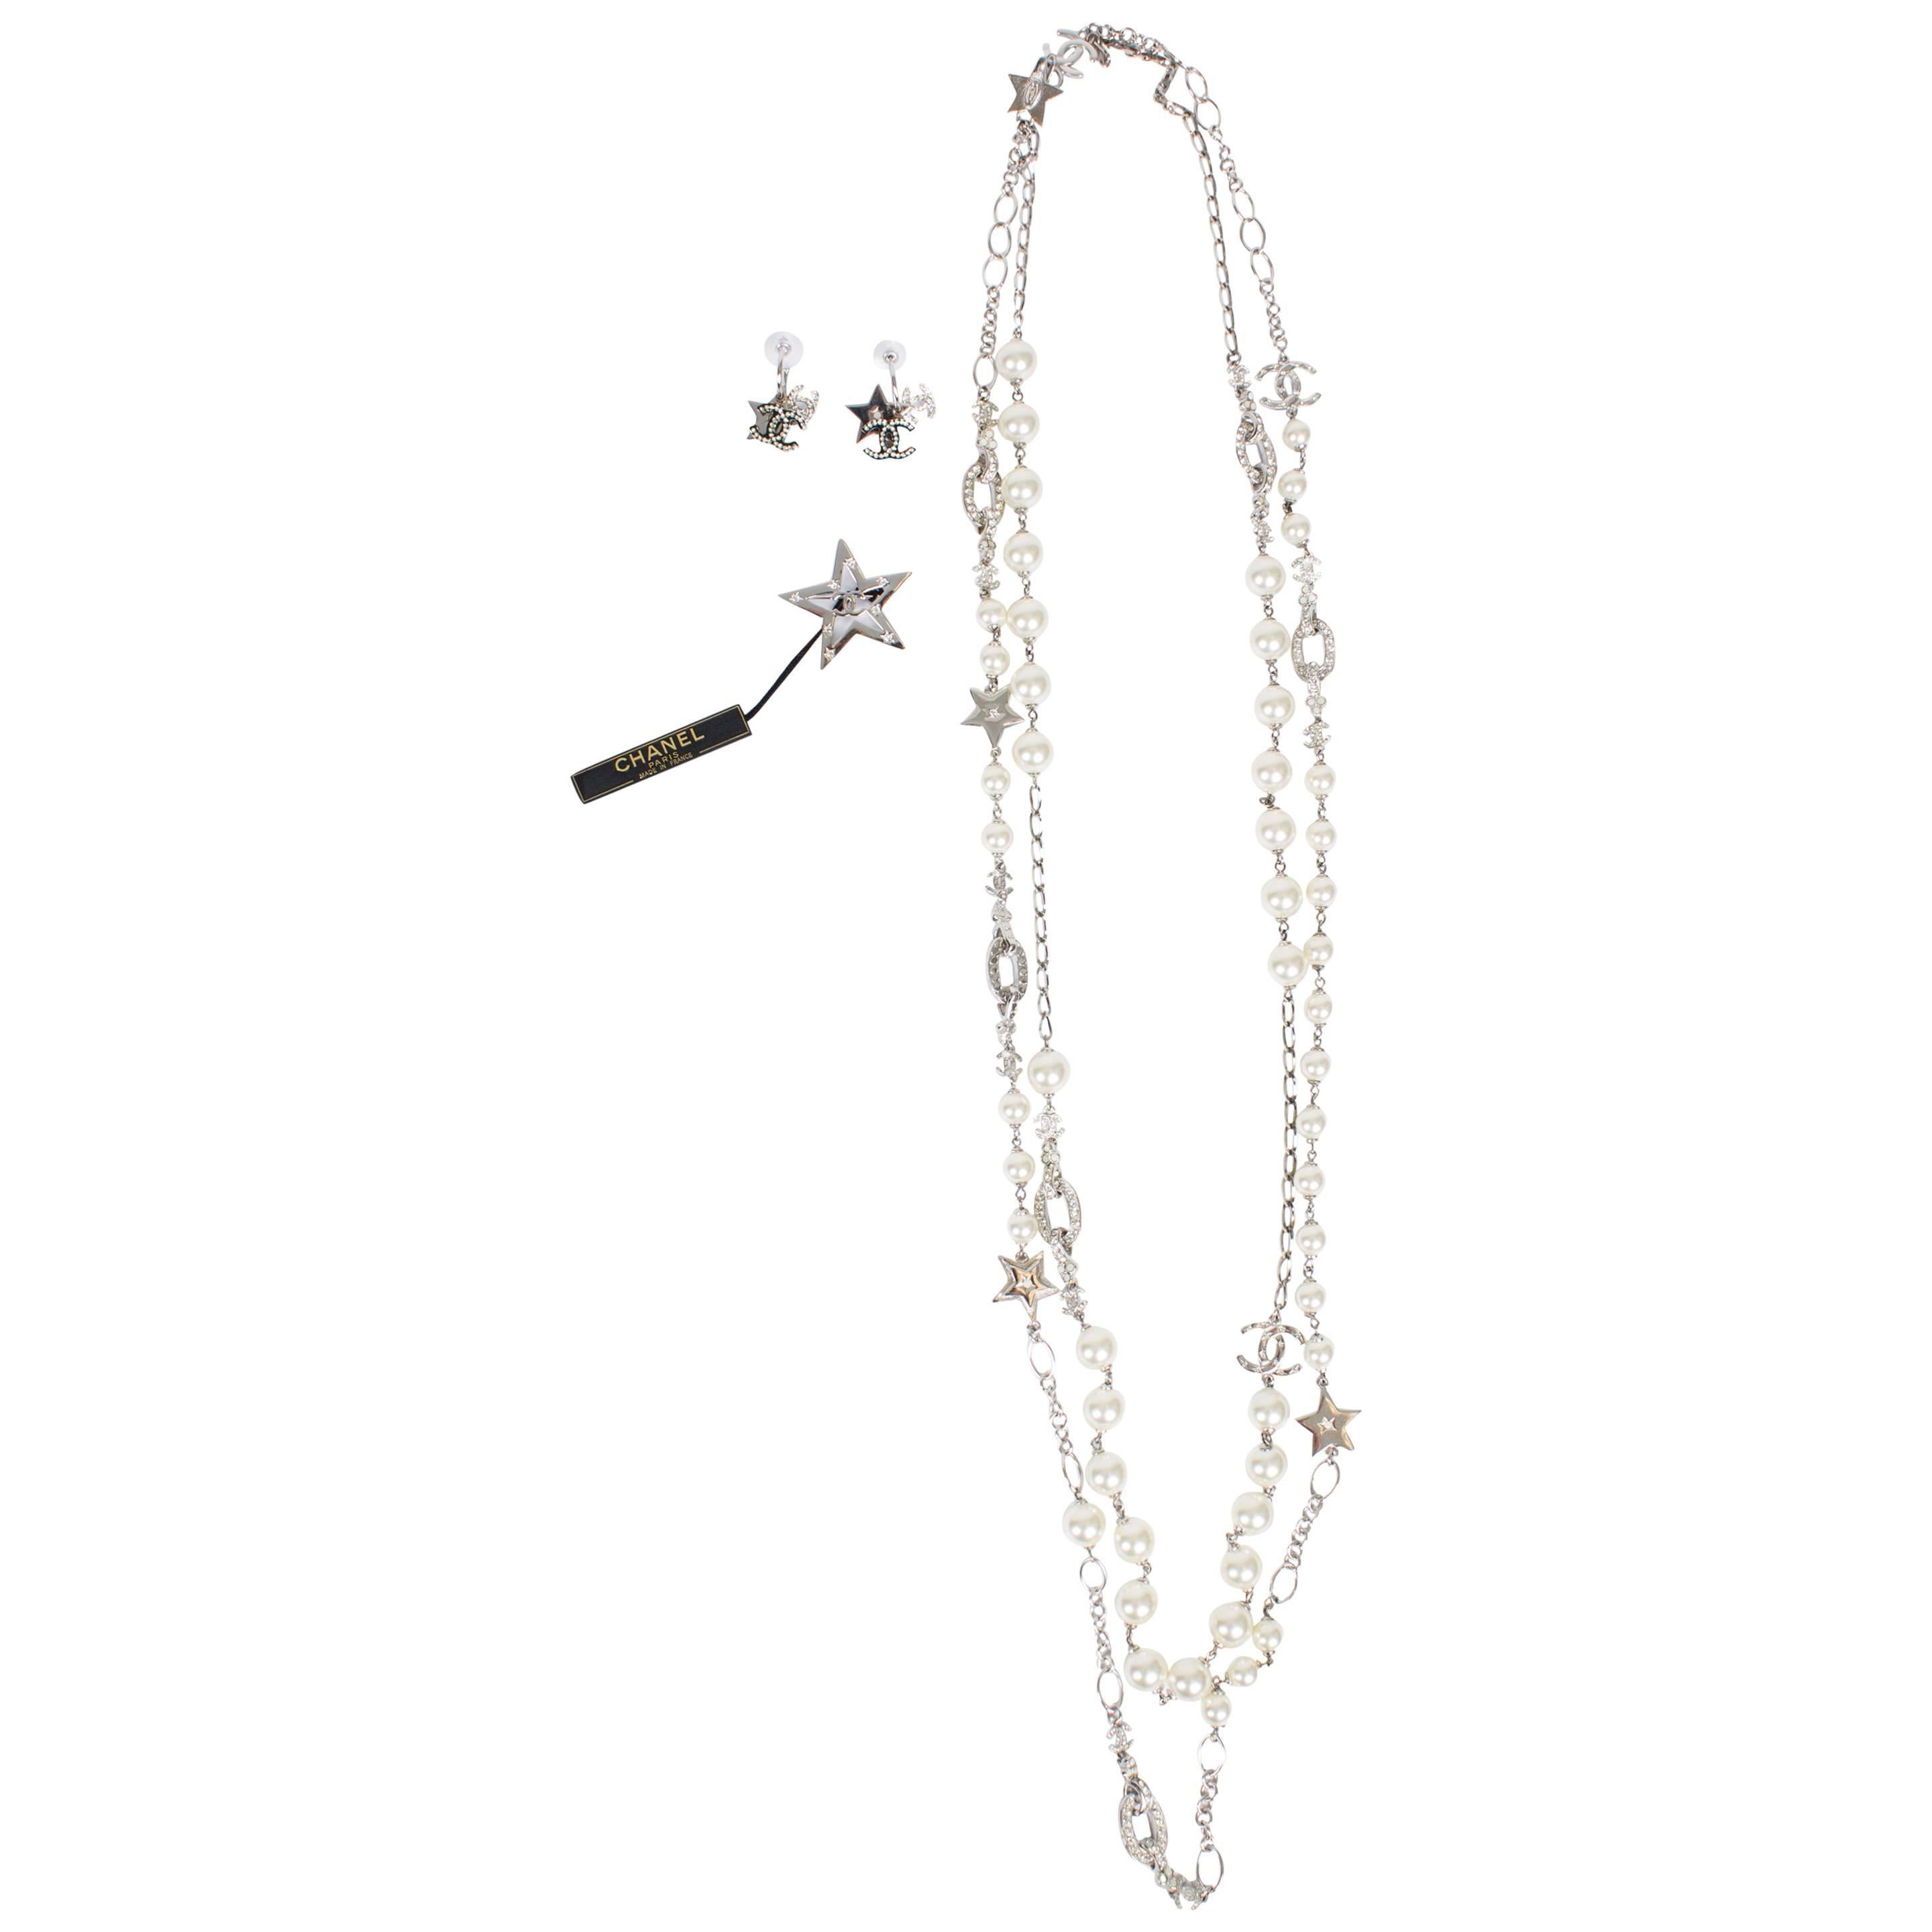 Chanel Star Pearl Necklace/Earrings/Brooch - silver